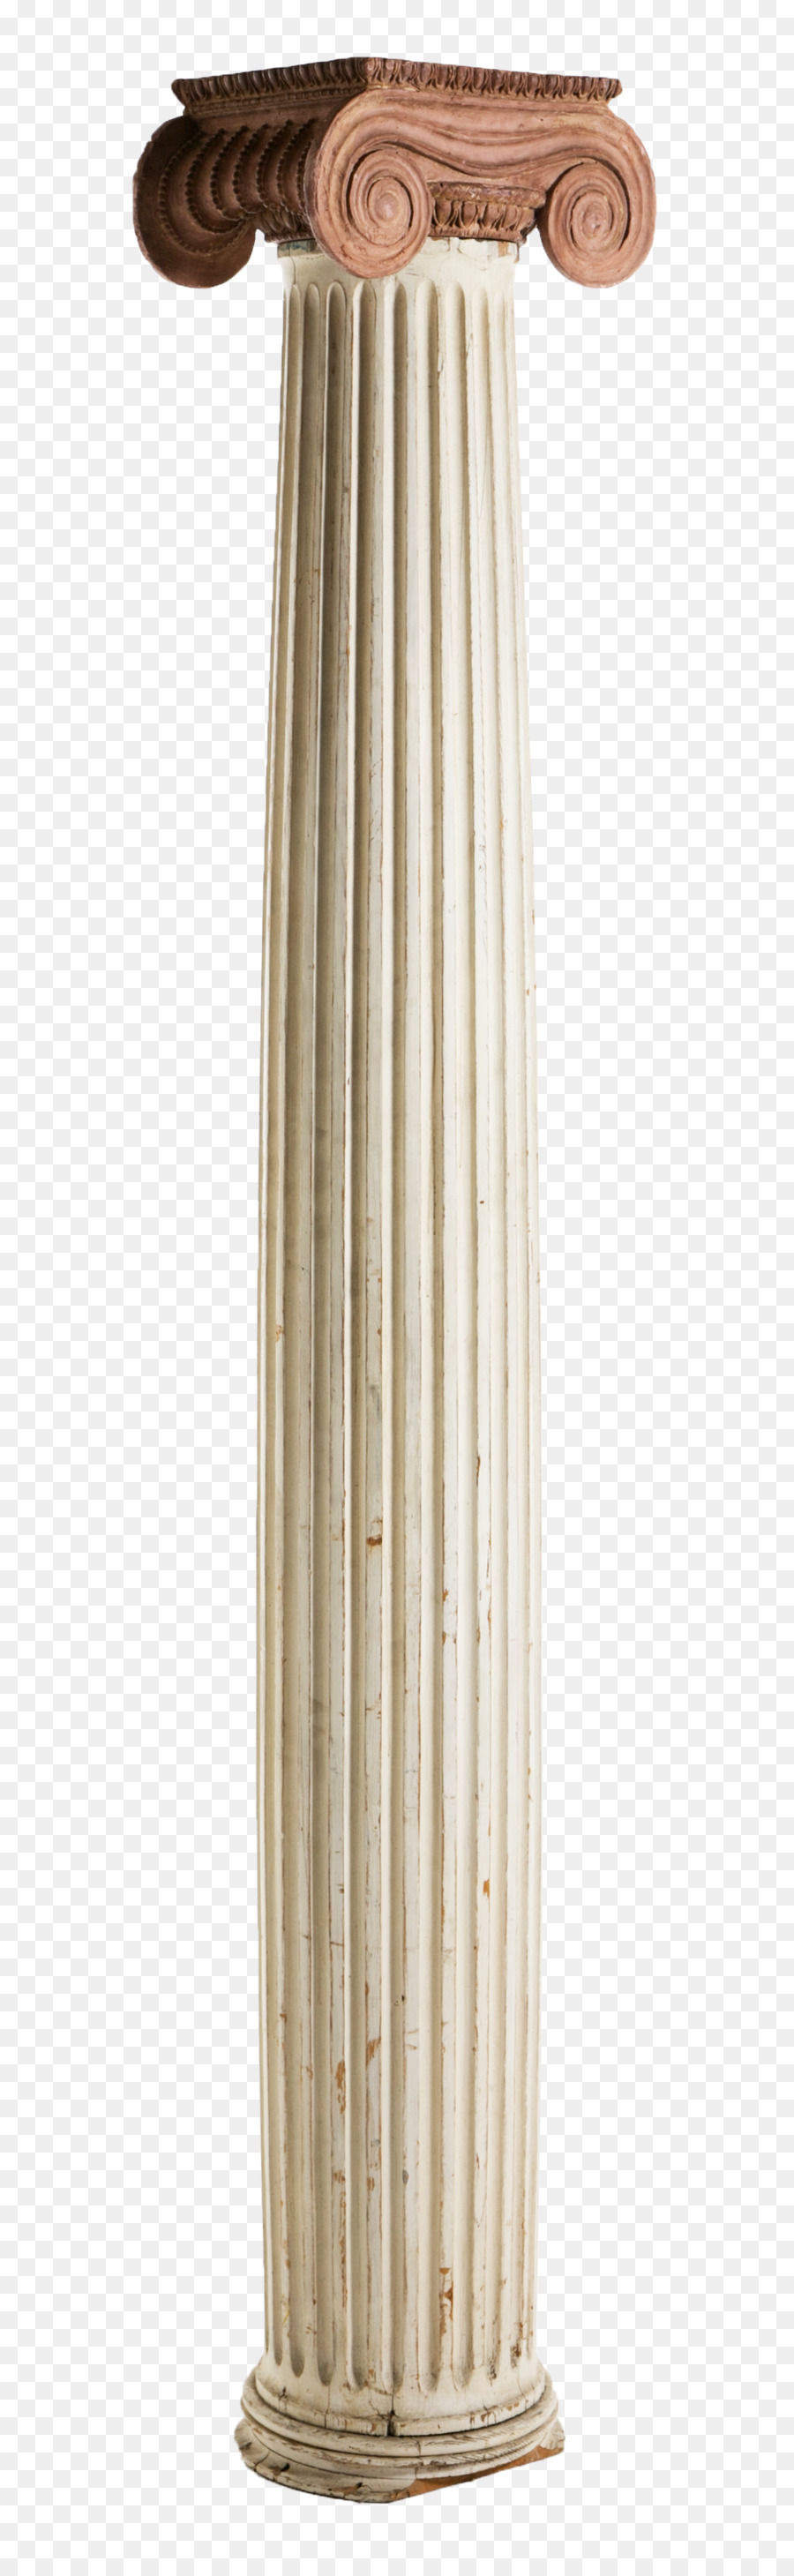 Colonna Clip art - colonna